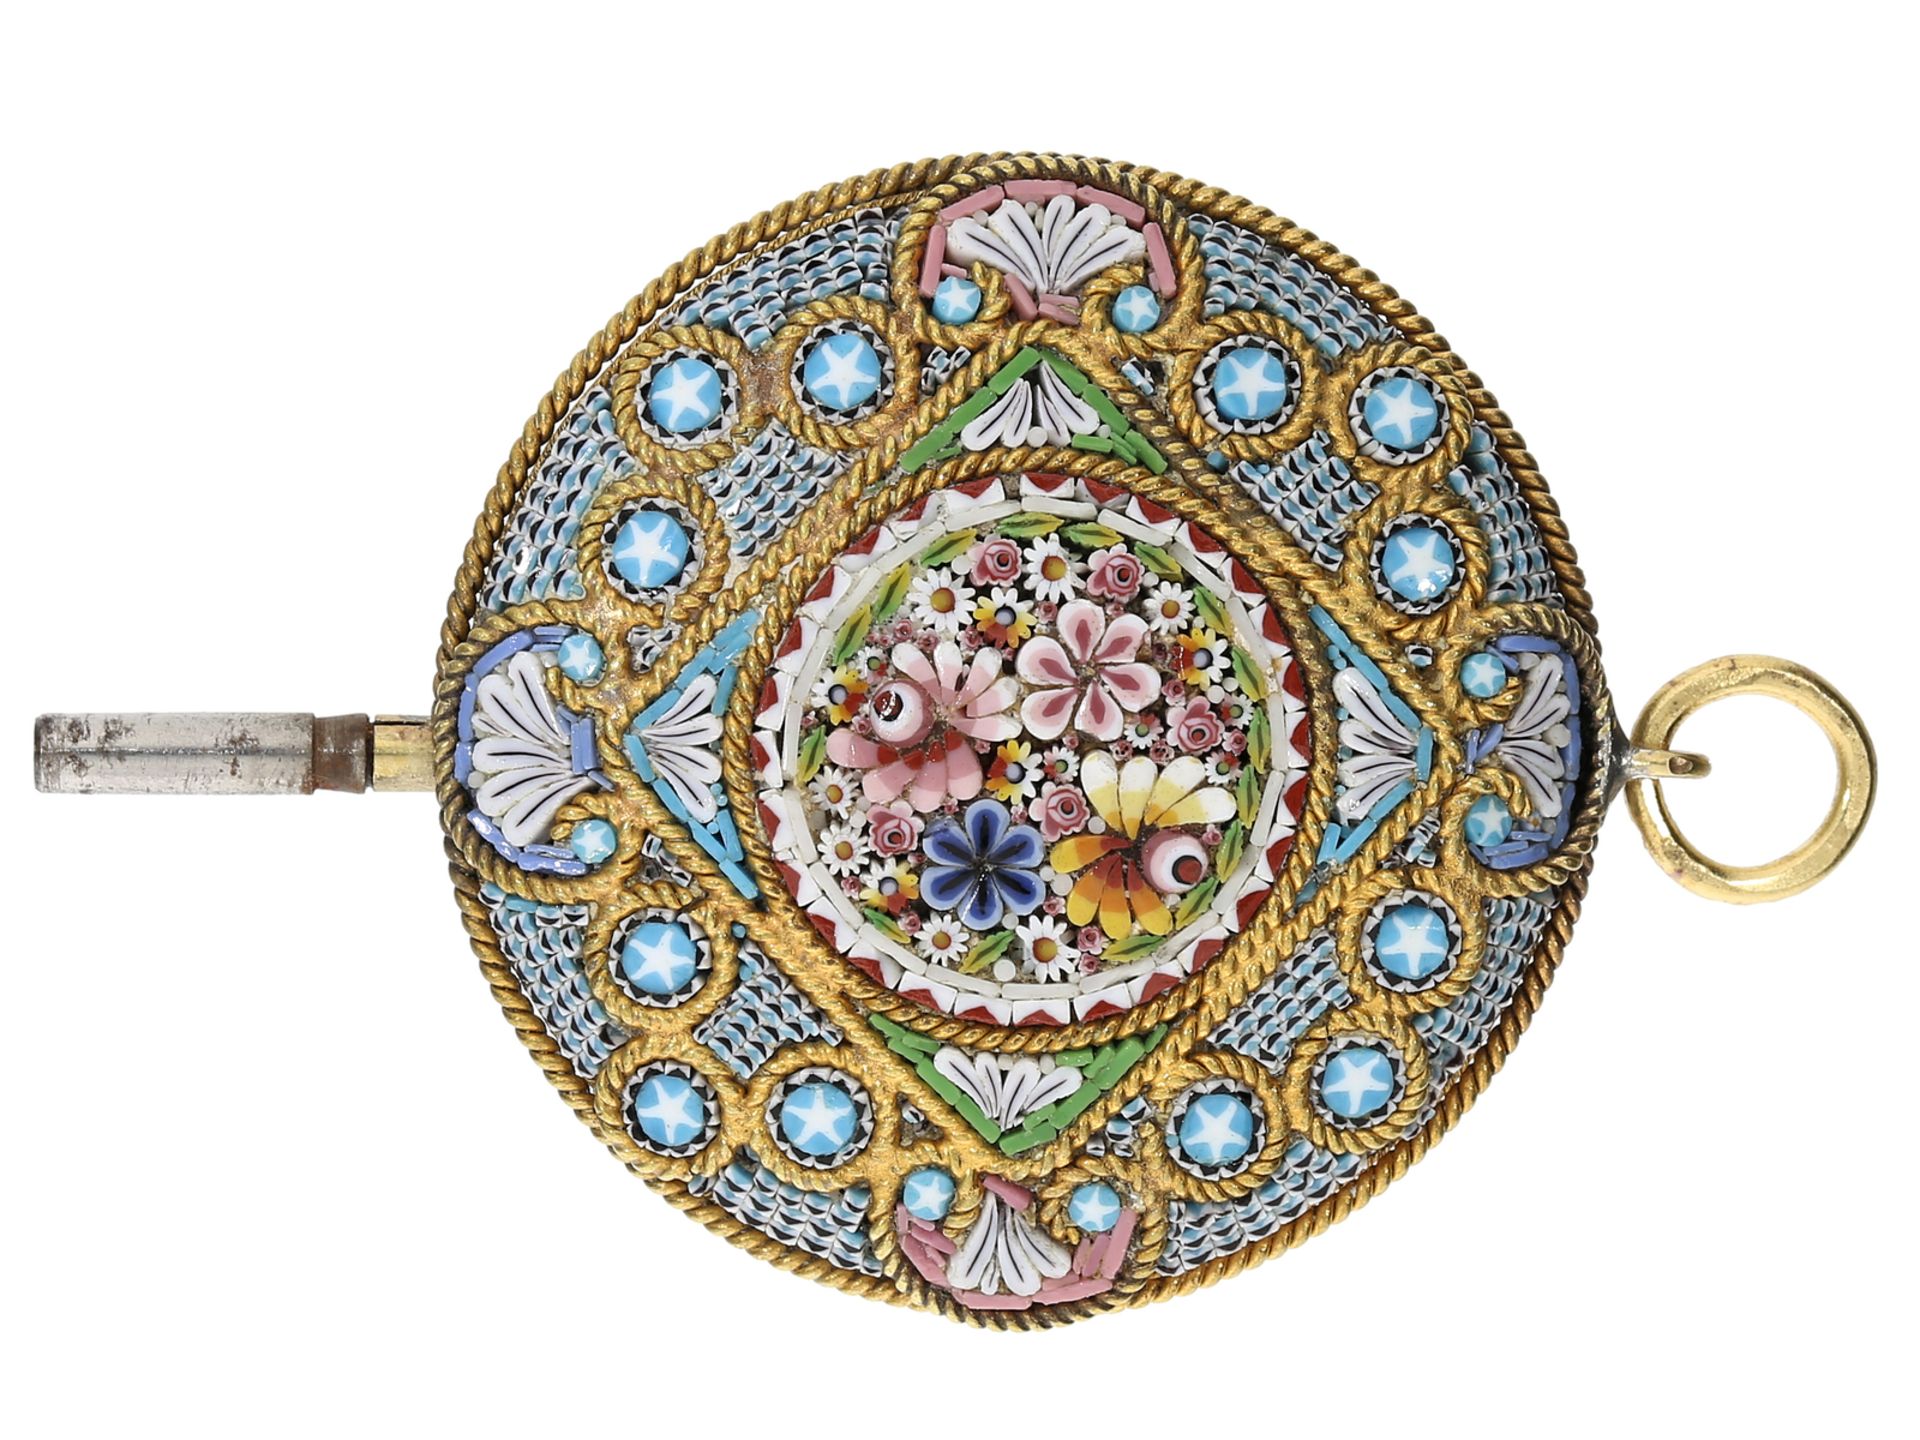 Uhrenschlüssel: extrem seltener Pietra-Dura Mikromosaik Spindeluhrenschlüssel, um 1800